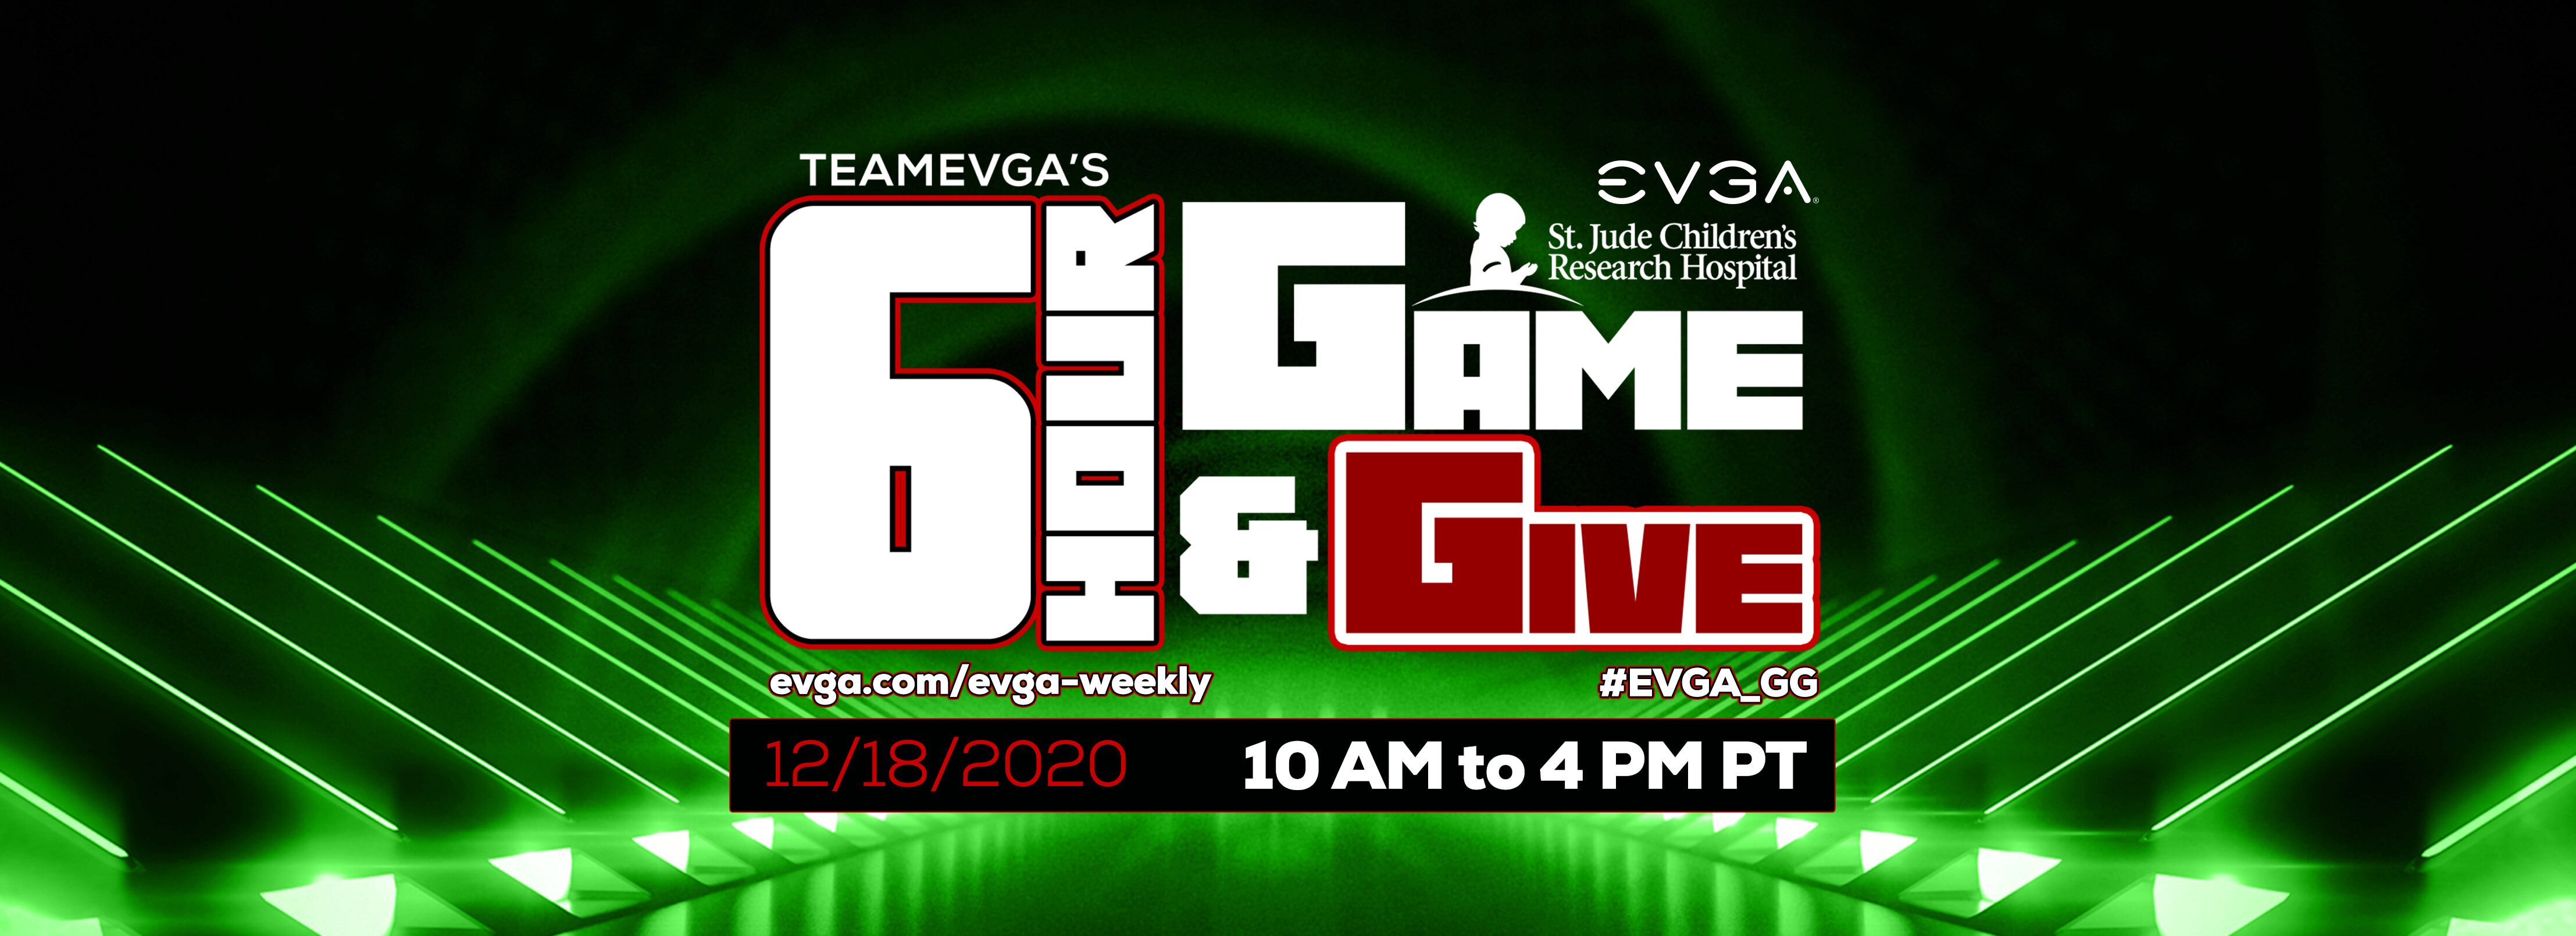 EVGA 6 Hour Game & Give